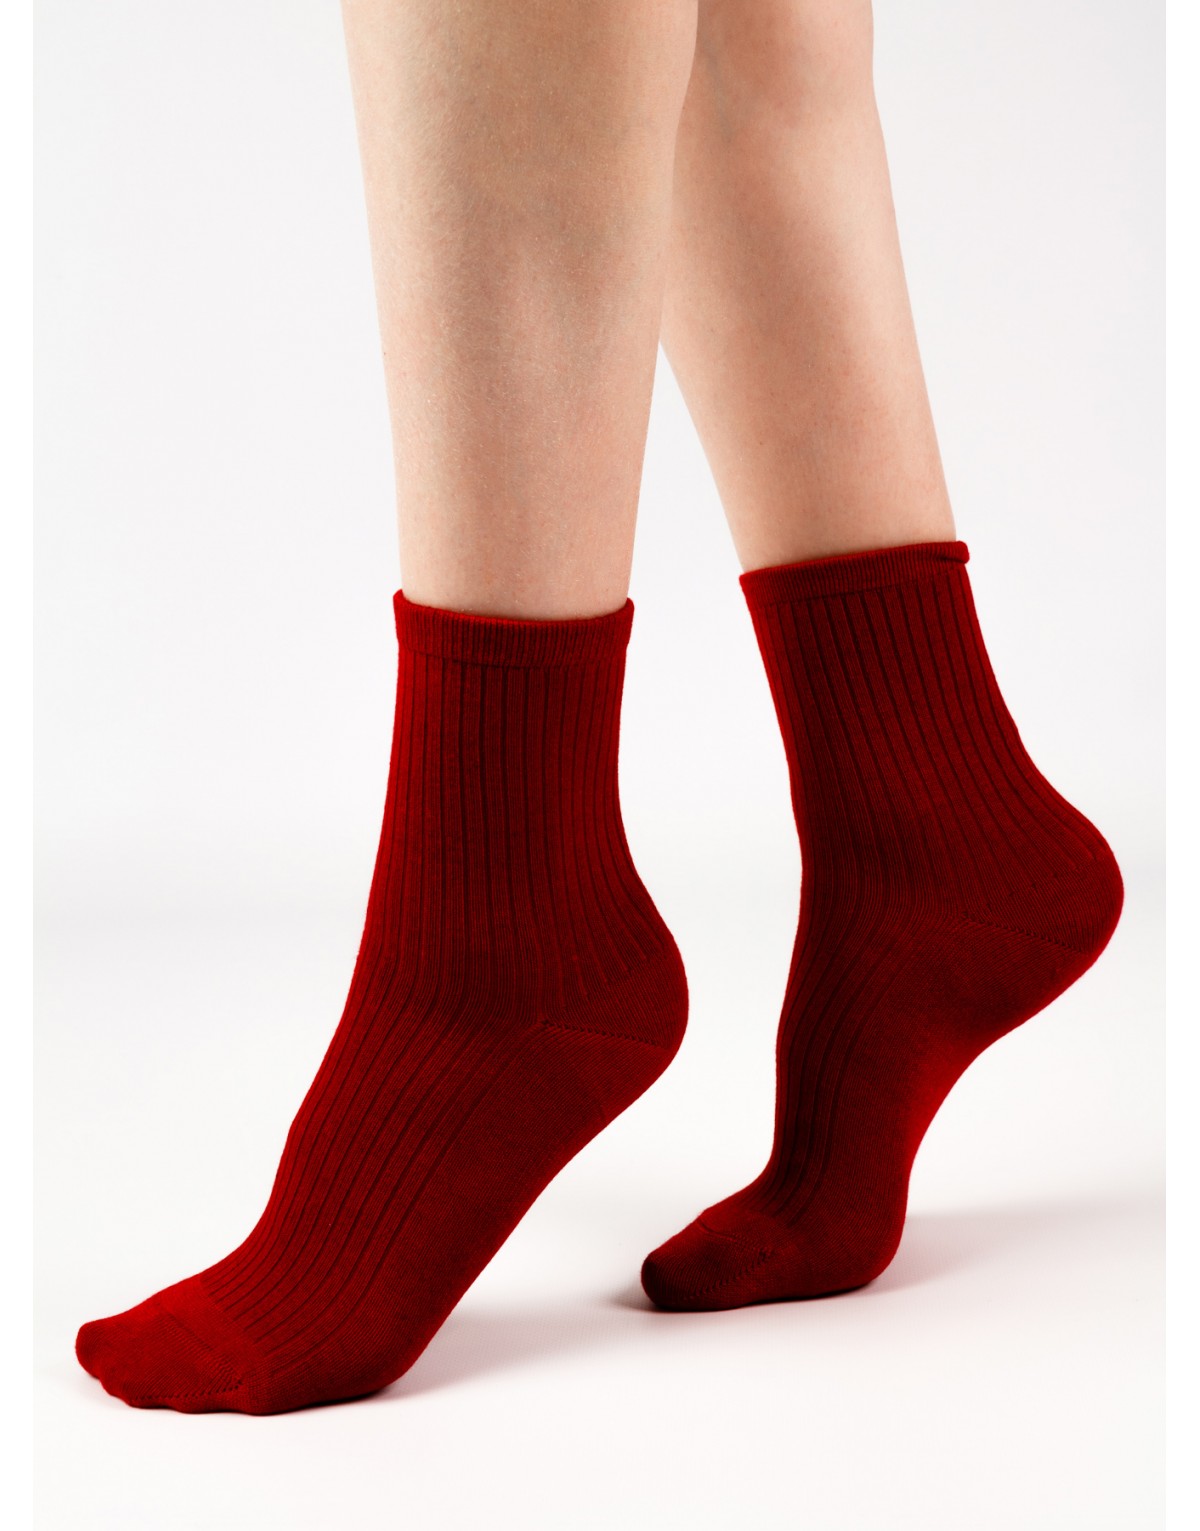 Шерстяные женские носки красного цвета